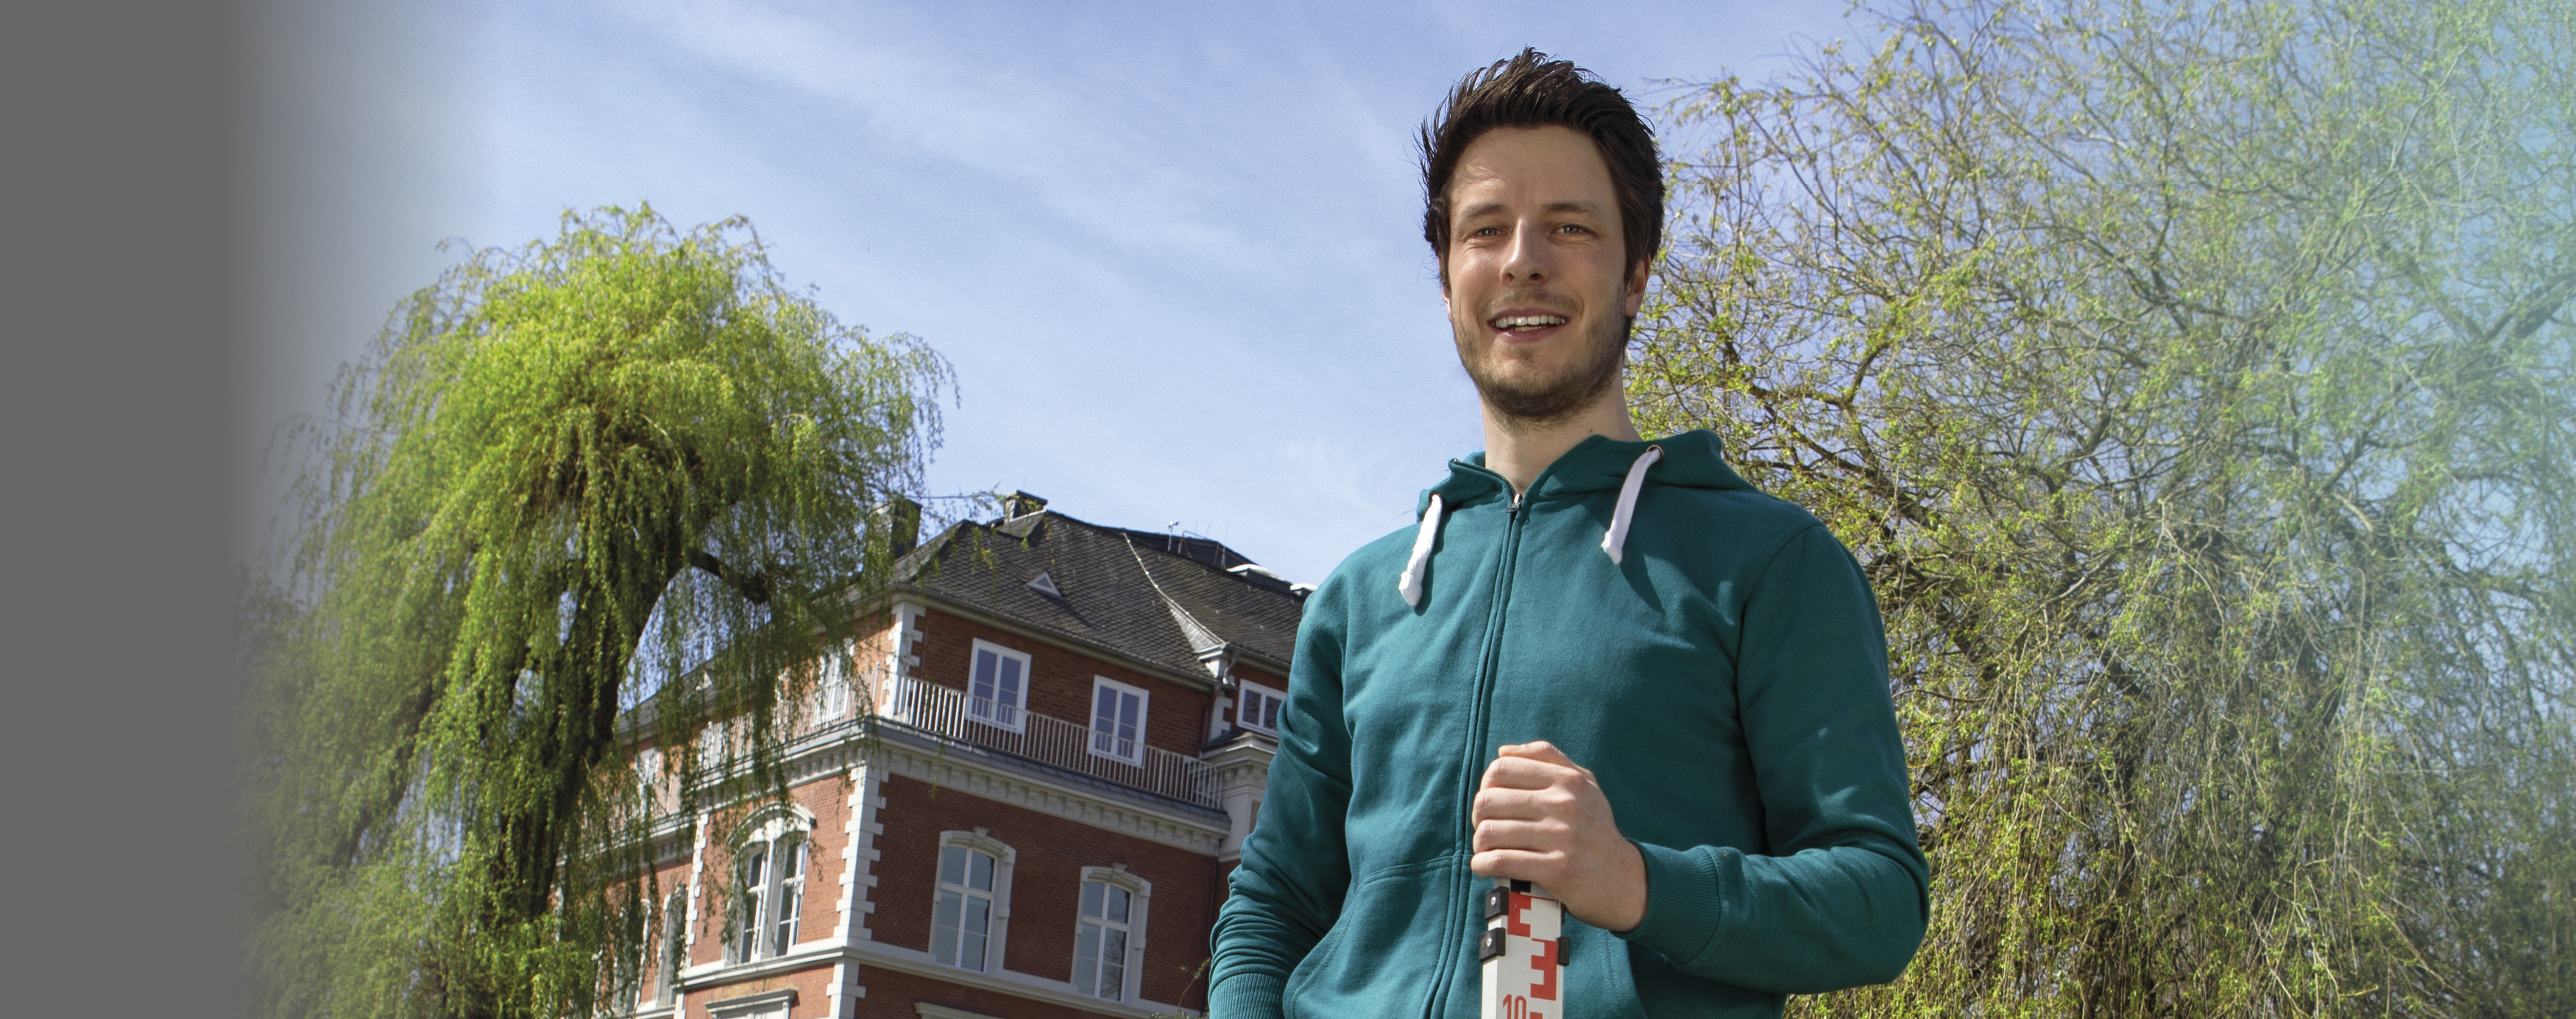 Ein junger Mann mit einer grünen Sweatshirtjacke steht vor der Musikschule Münster und hält einen Messstab für seine Arbeit als Ingenieur für Wasserwirtschaft